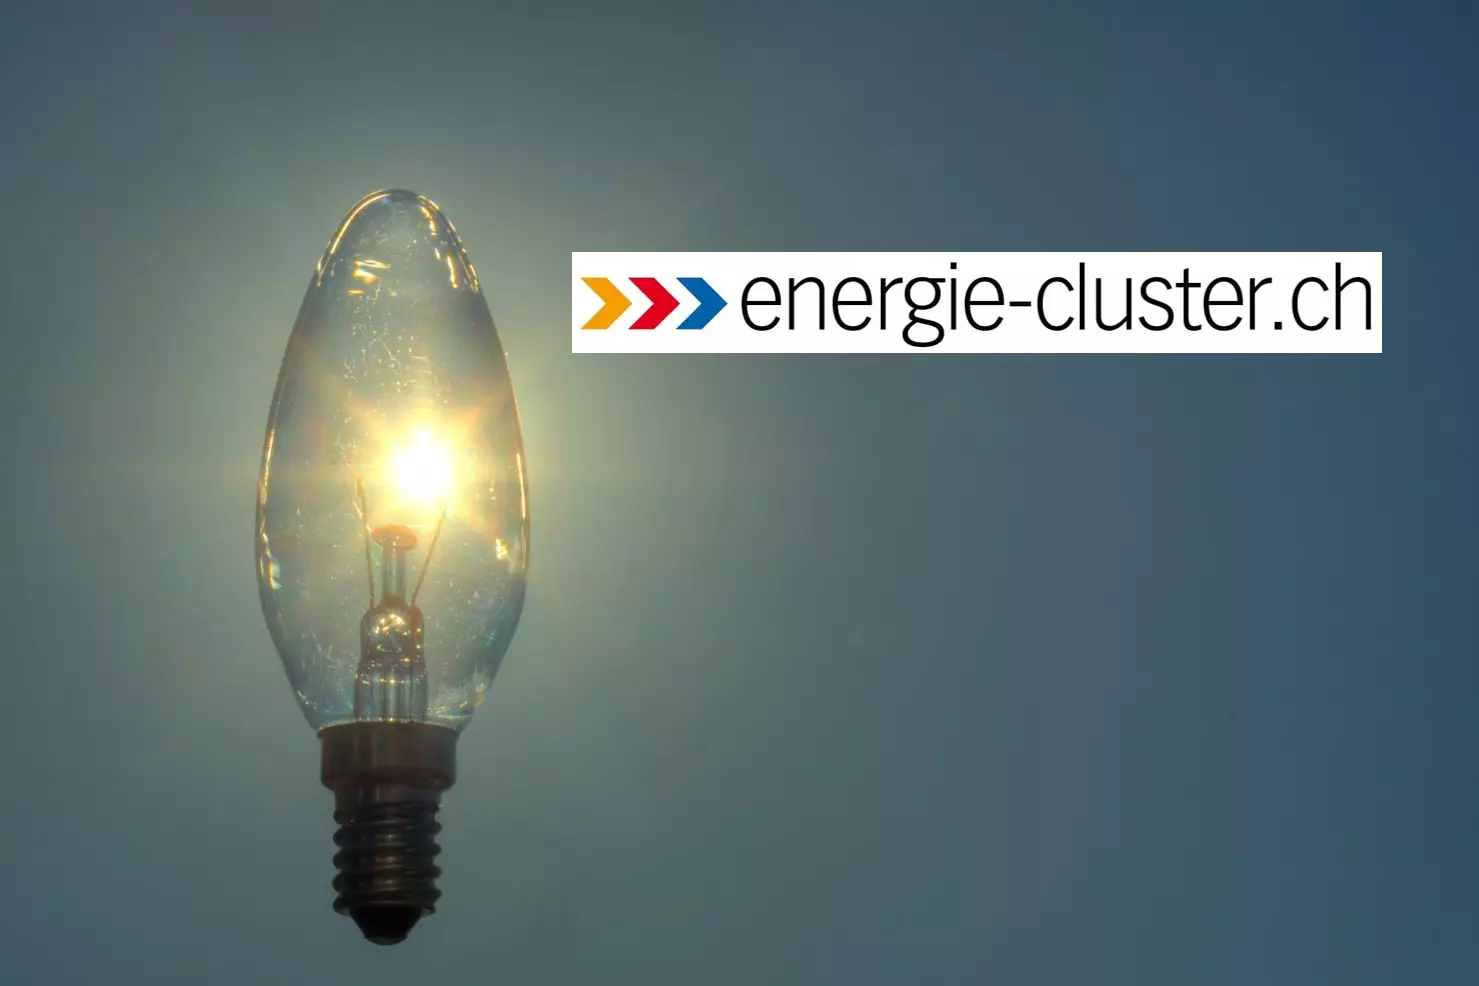 Das Bild zeigt das Logo des energie-cluster.ch